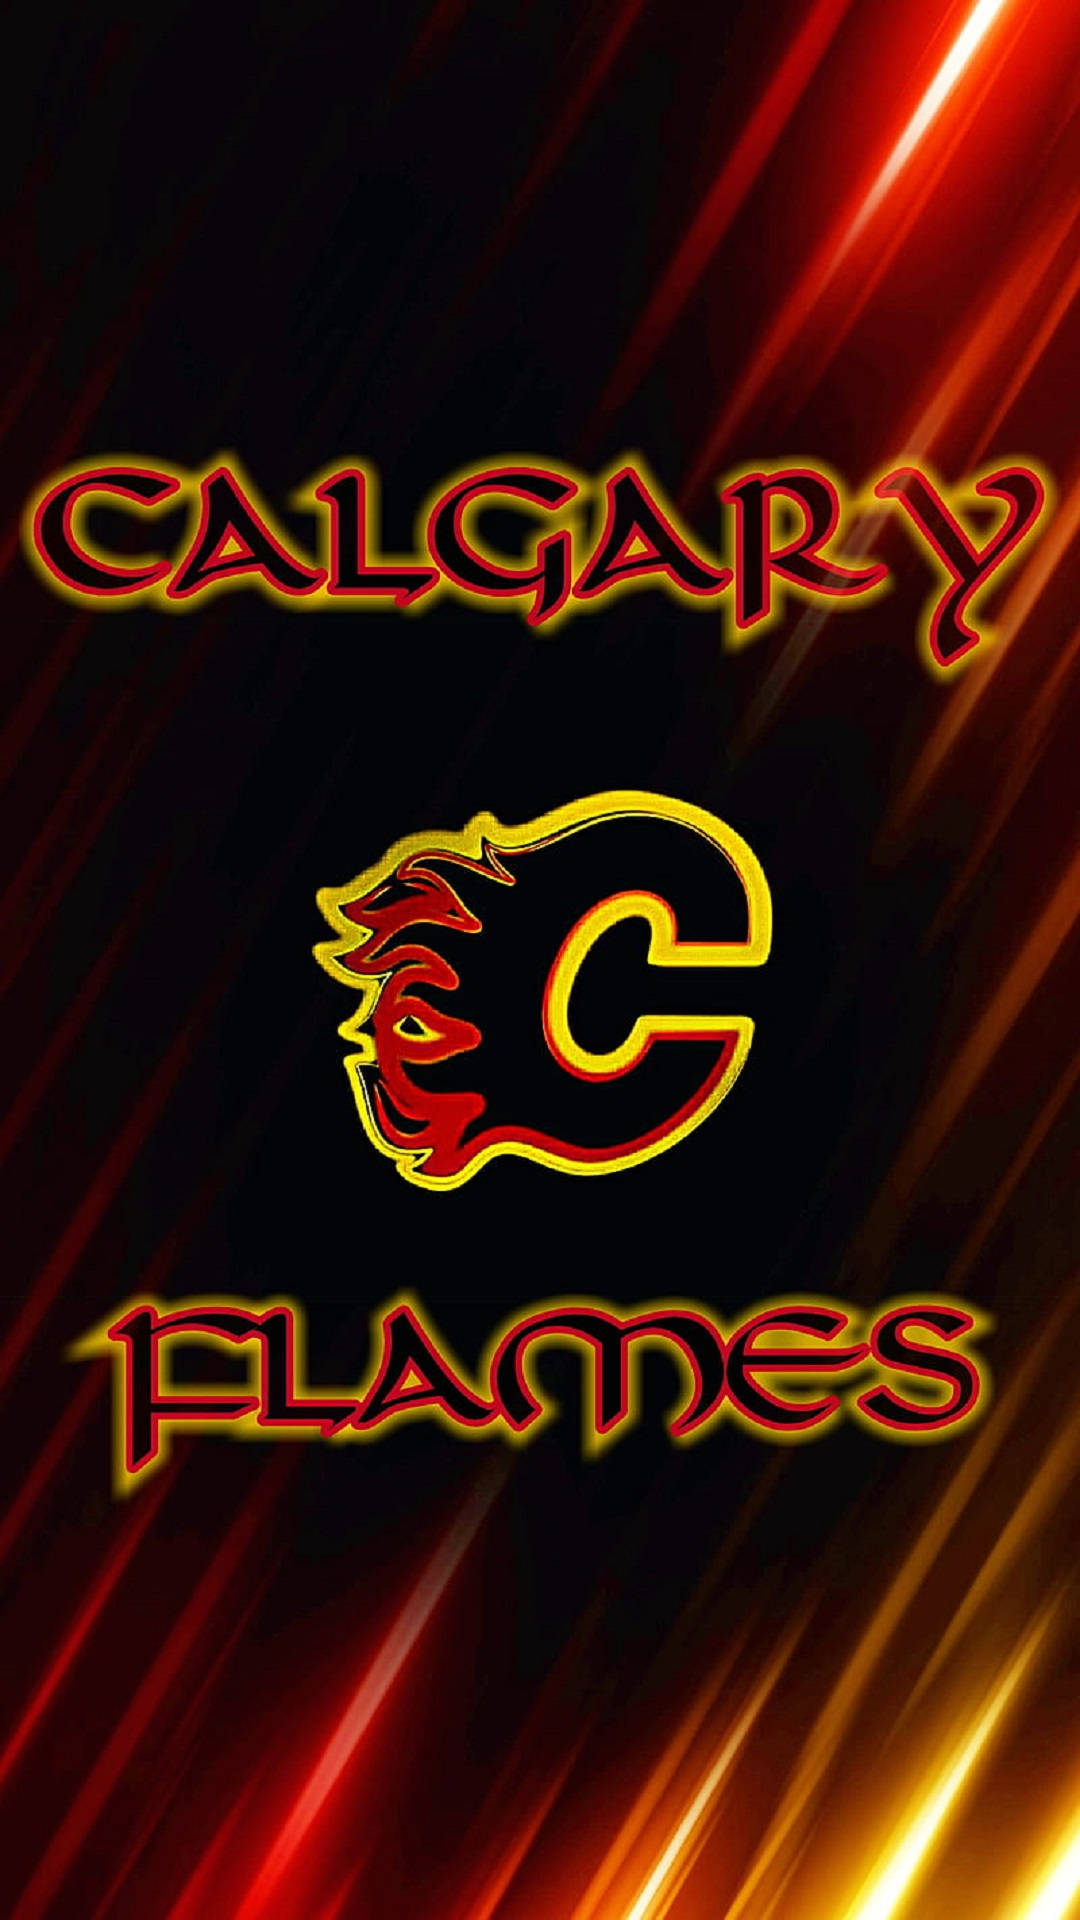 70+] Calgary Flames Wallpaper - WallpaperSafari